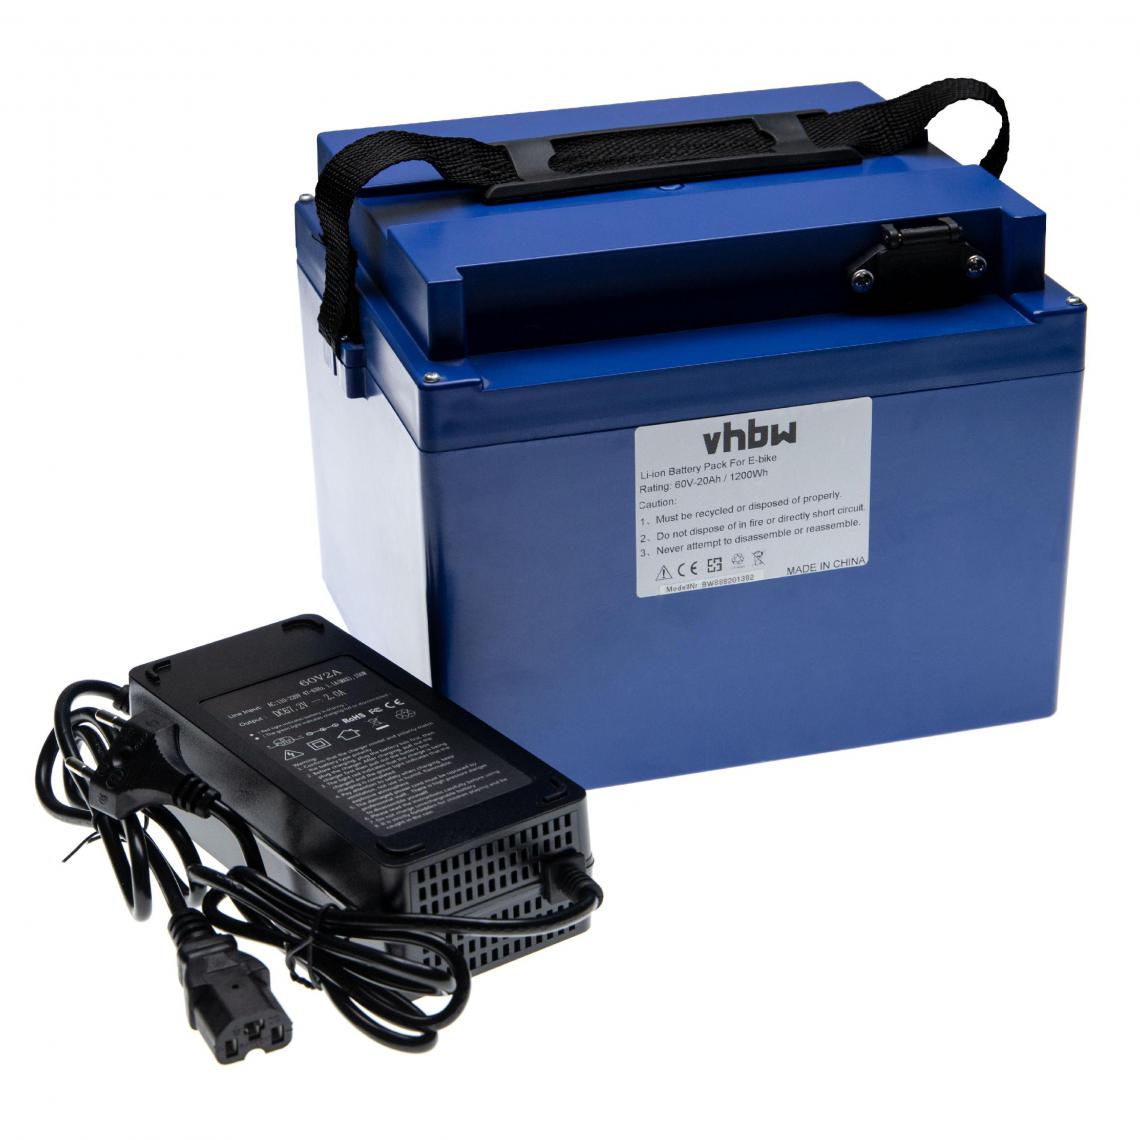 Vhbw - vhbw Batterie de rechange 20Ah 60V Li-Ion chargeur inclus compatible avec divers fauteuils roulants, trottinettes, vélos électriques et plus - Vélo électrique